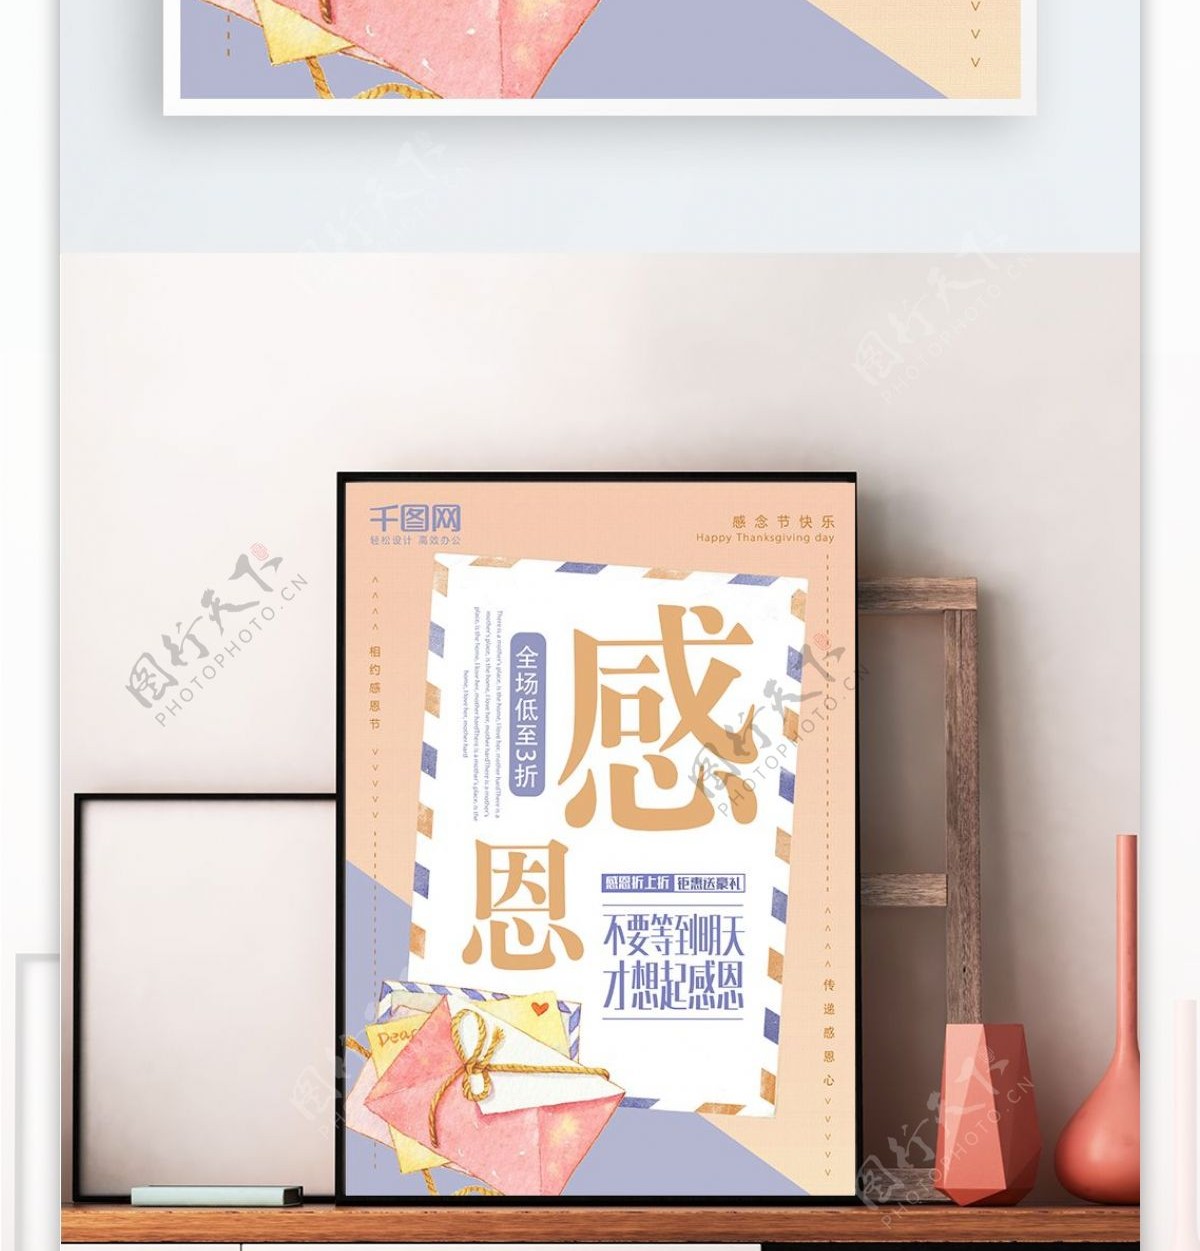 简约清新信封感恩节促销海报设计